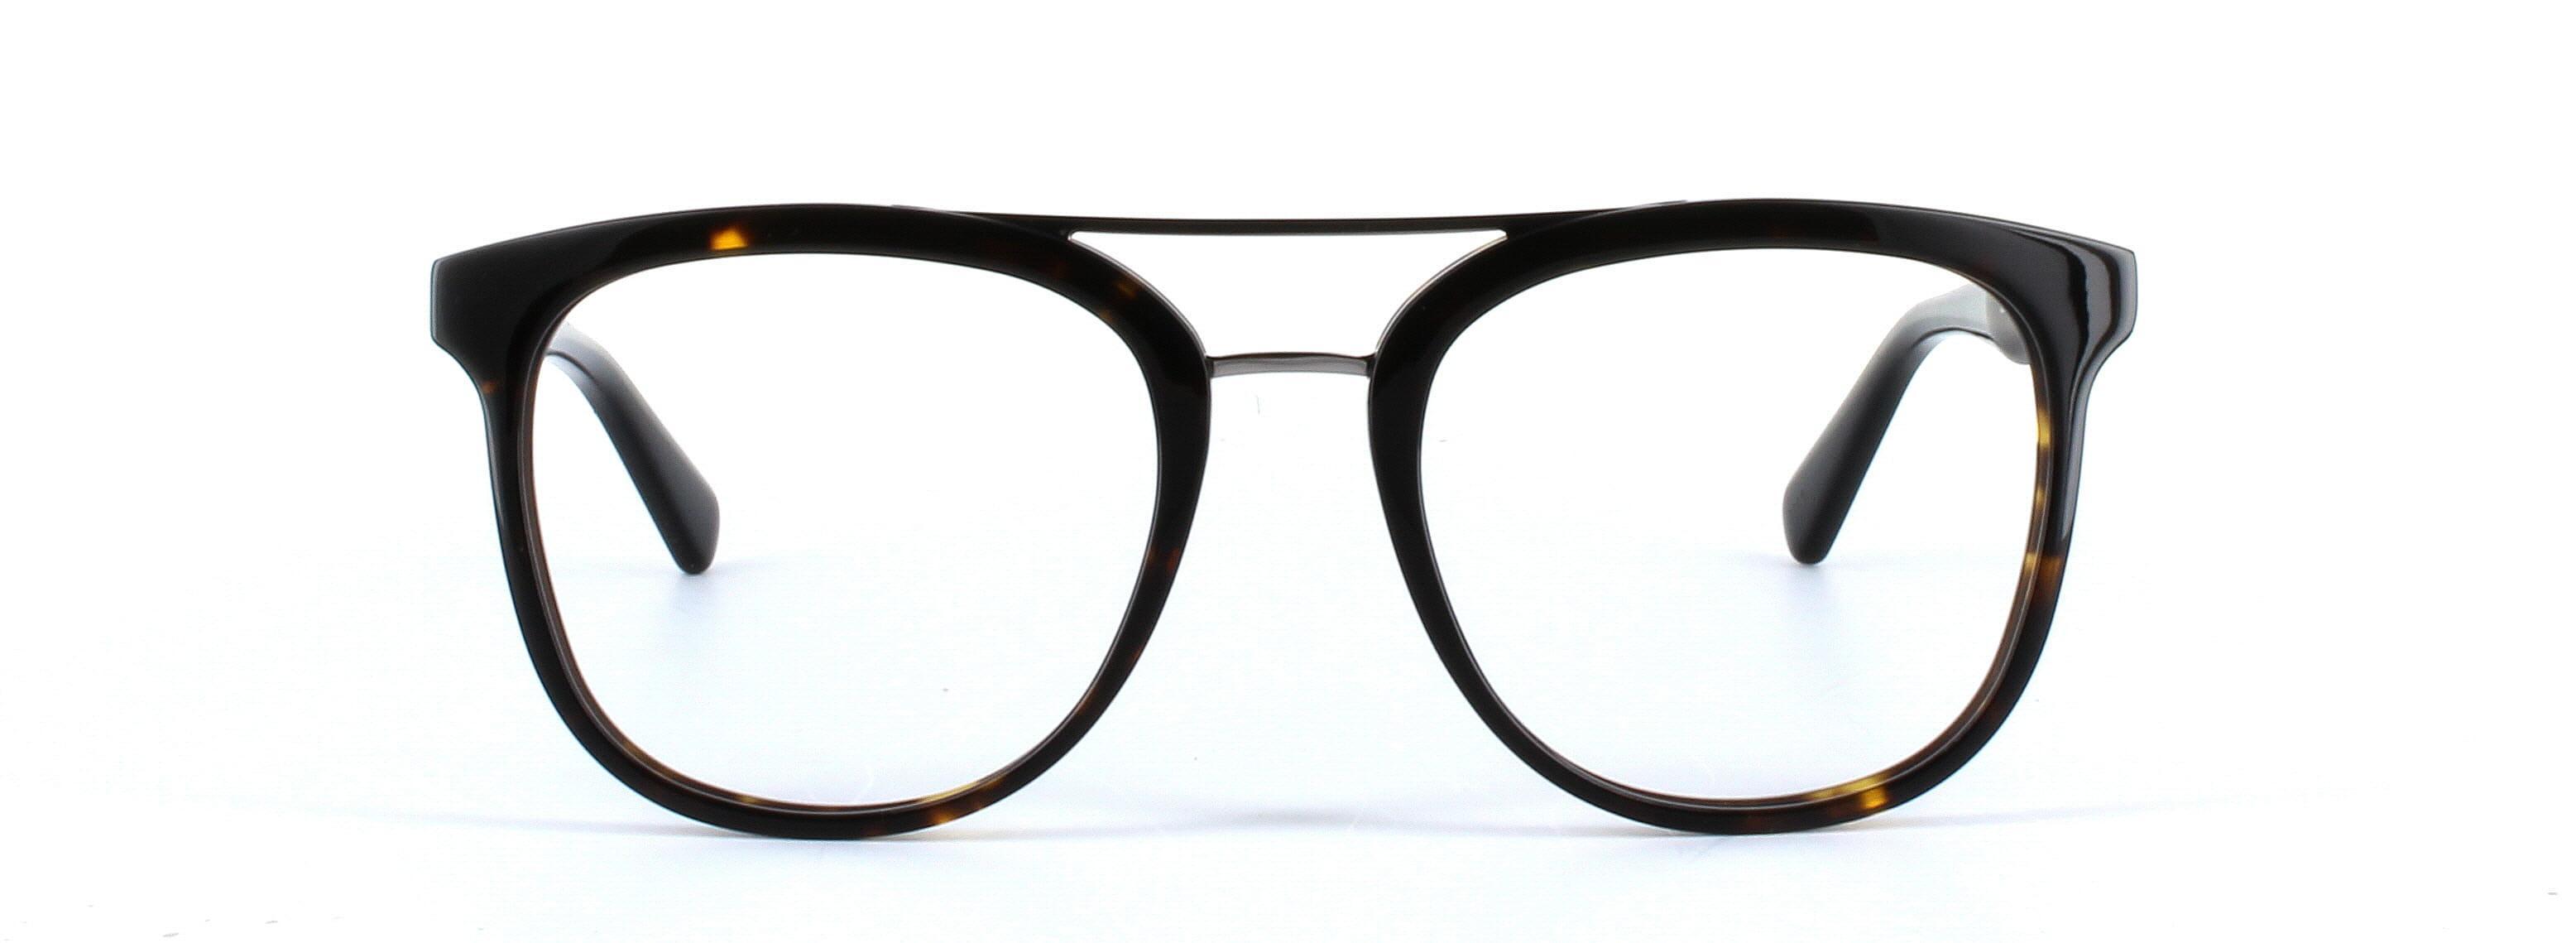 GUESS (GU1953-052) Brown Full Rim Square Acetate Glasses - Image View 5